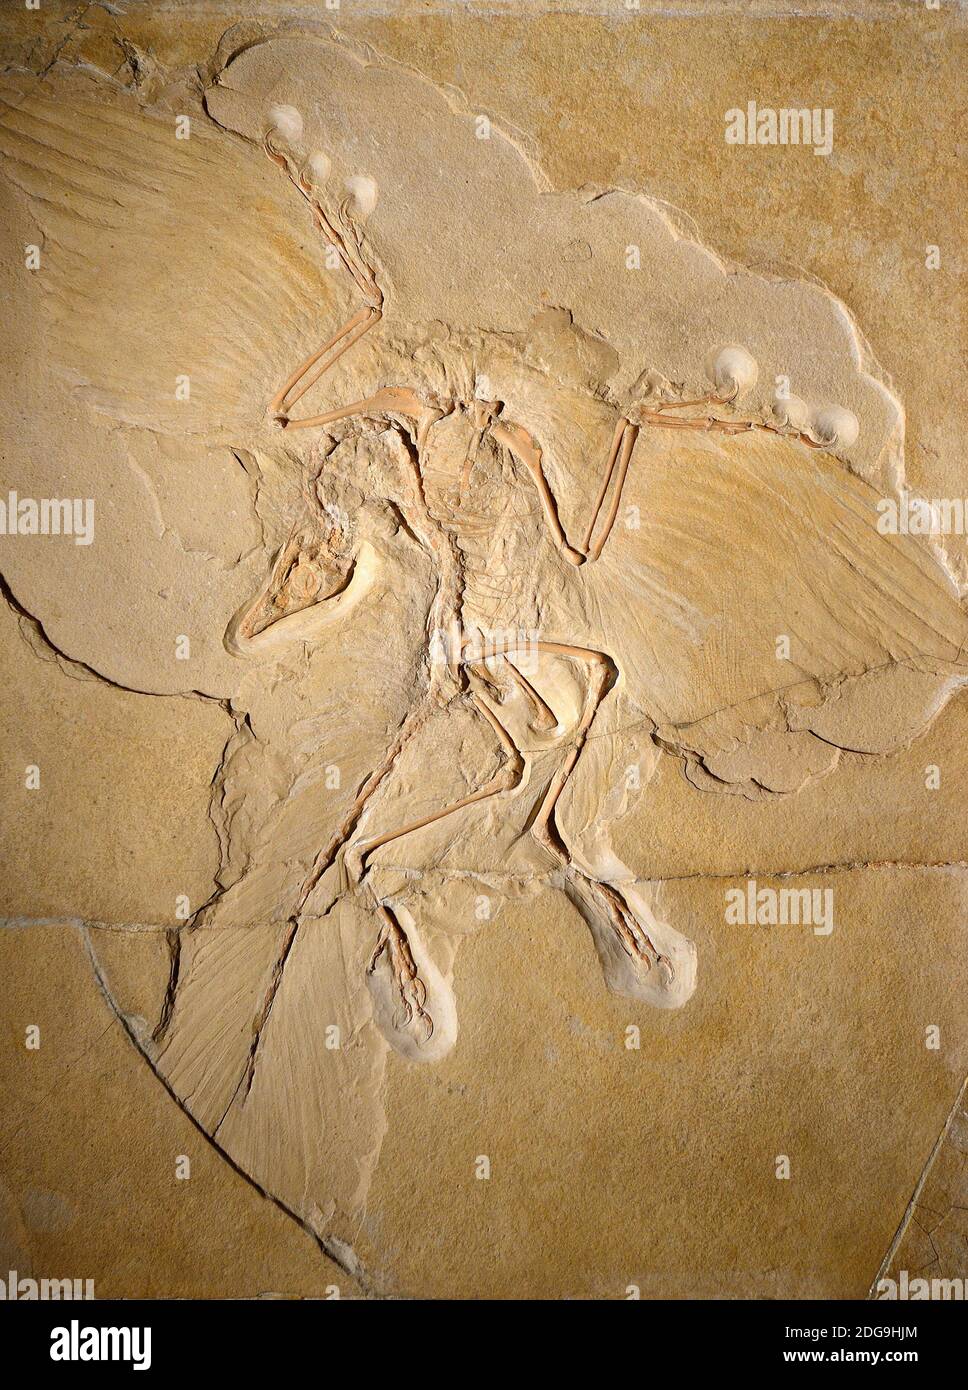 Exemplaire des Urvogels Berliner (Archaeopteryx lithographica), das am besten erhaltene weltweit Exemplar, Naturkundemuseum, Museum für Naturkunde, Ber Banque D'Images